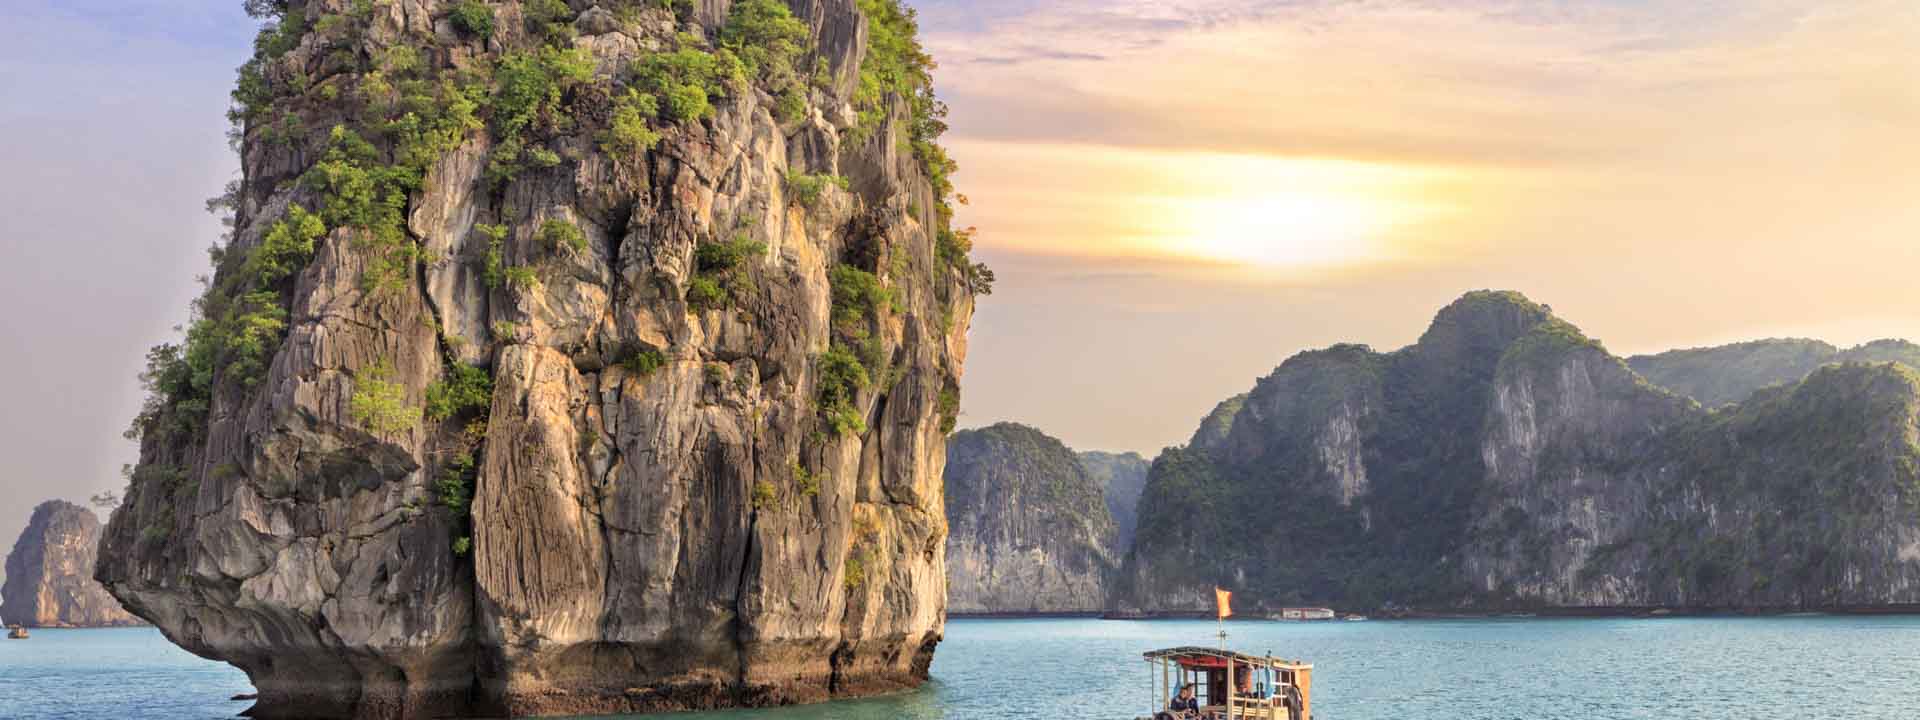 Gran Aventura al Aire Libre en Vietnam 14 días